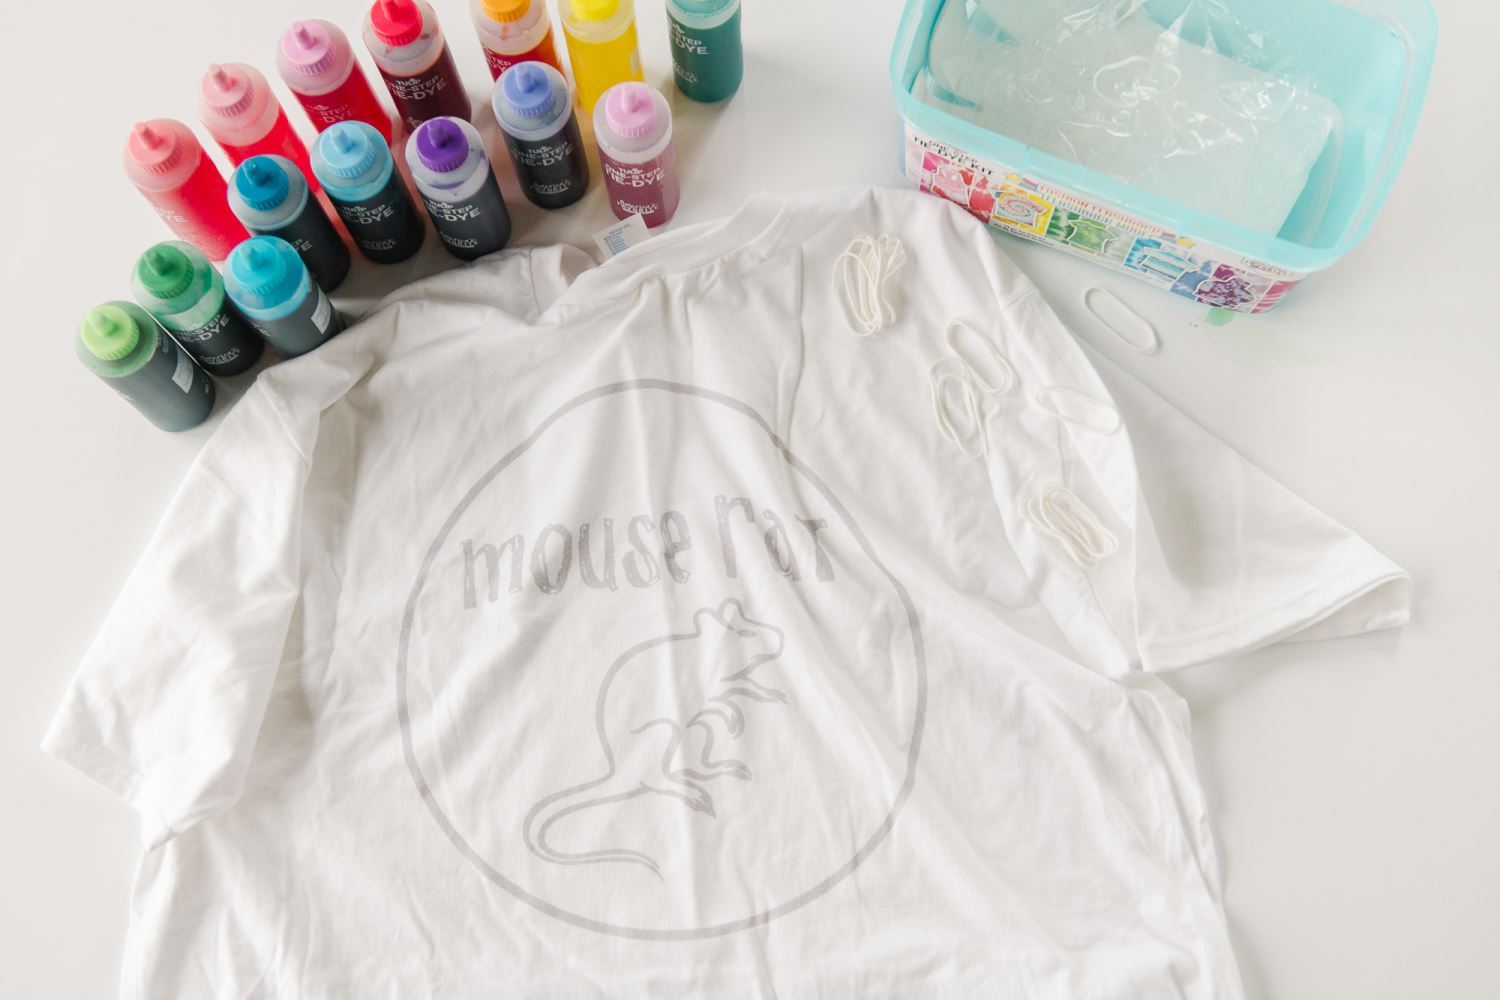 Prewash shirt and prepare dye solutions